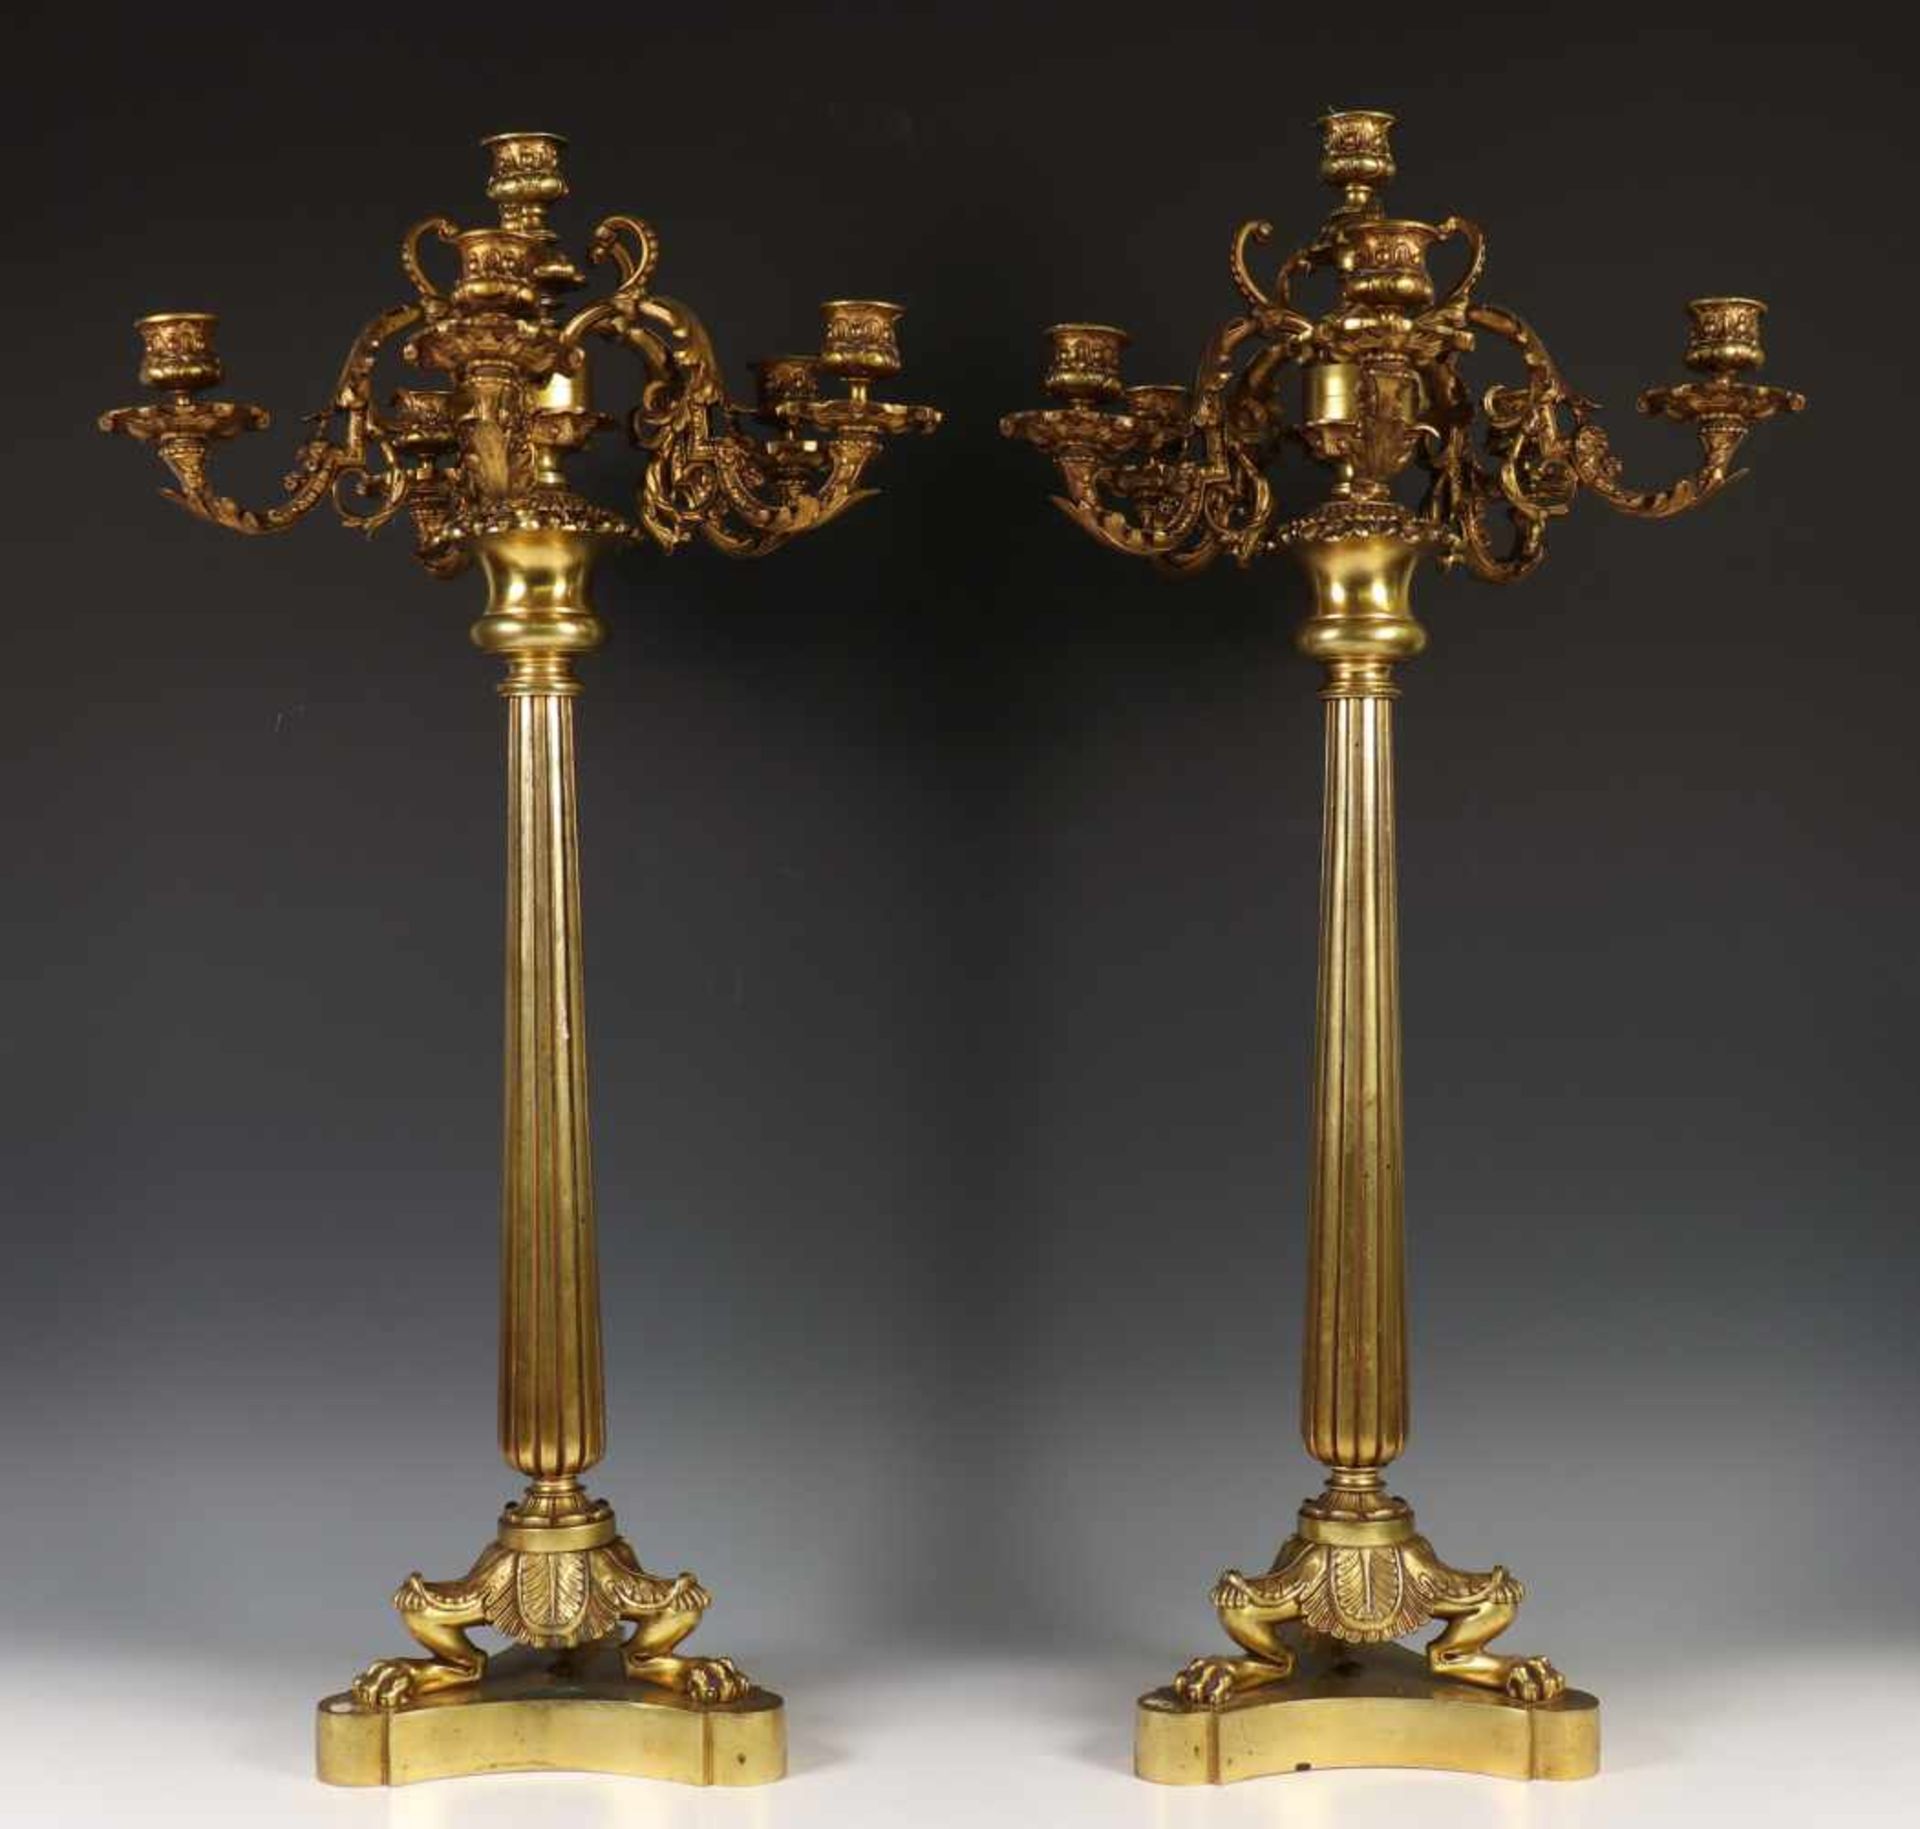 Paar bronzen bronzen/metalen zeslichts kandelabers in eclectische stijl,met gecanneleerde stam, op